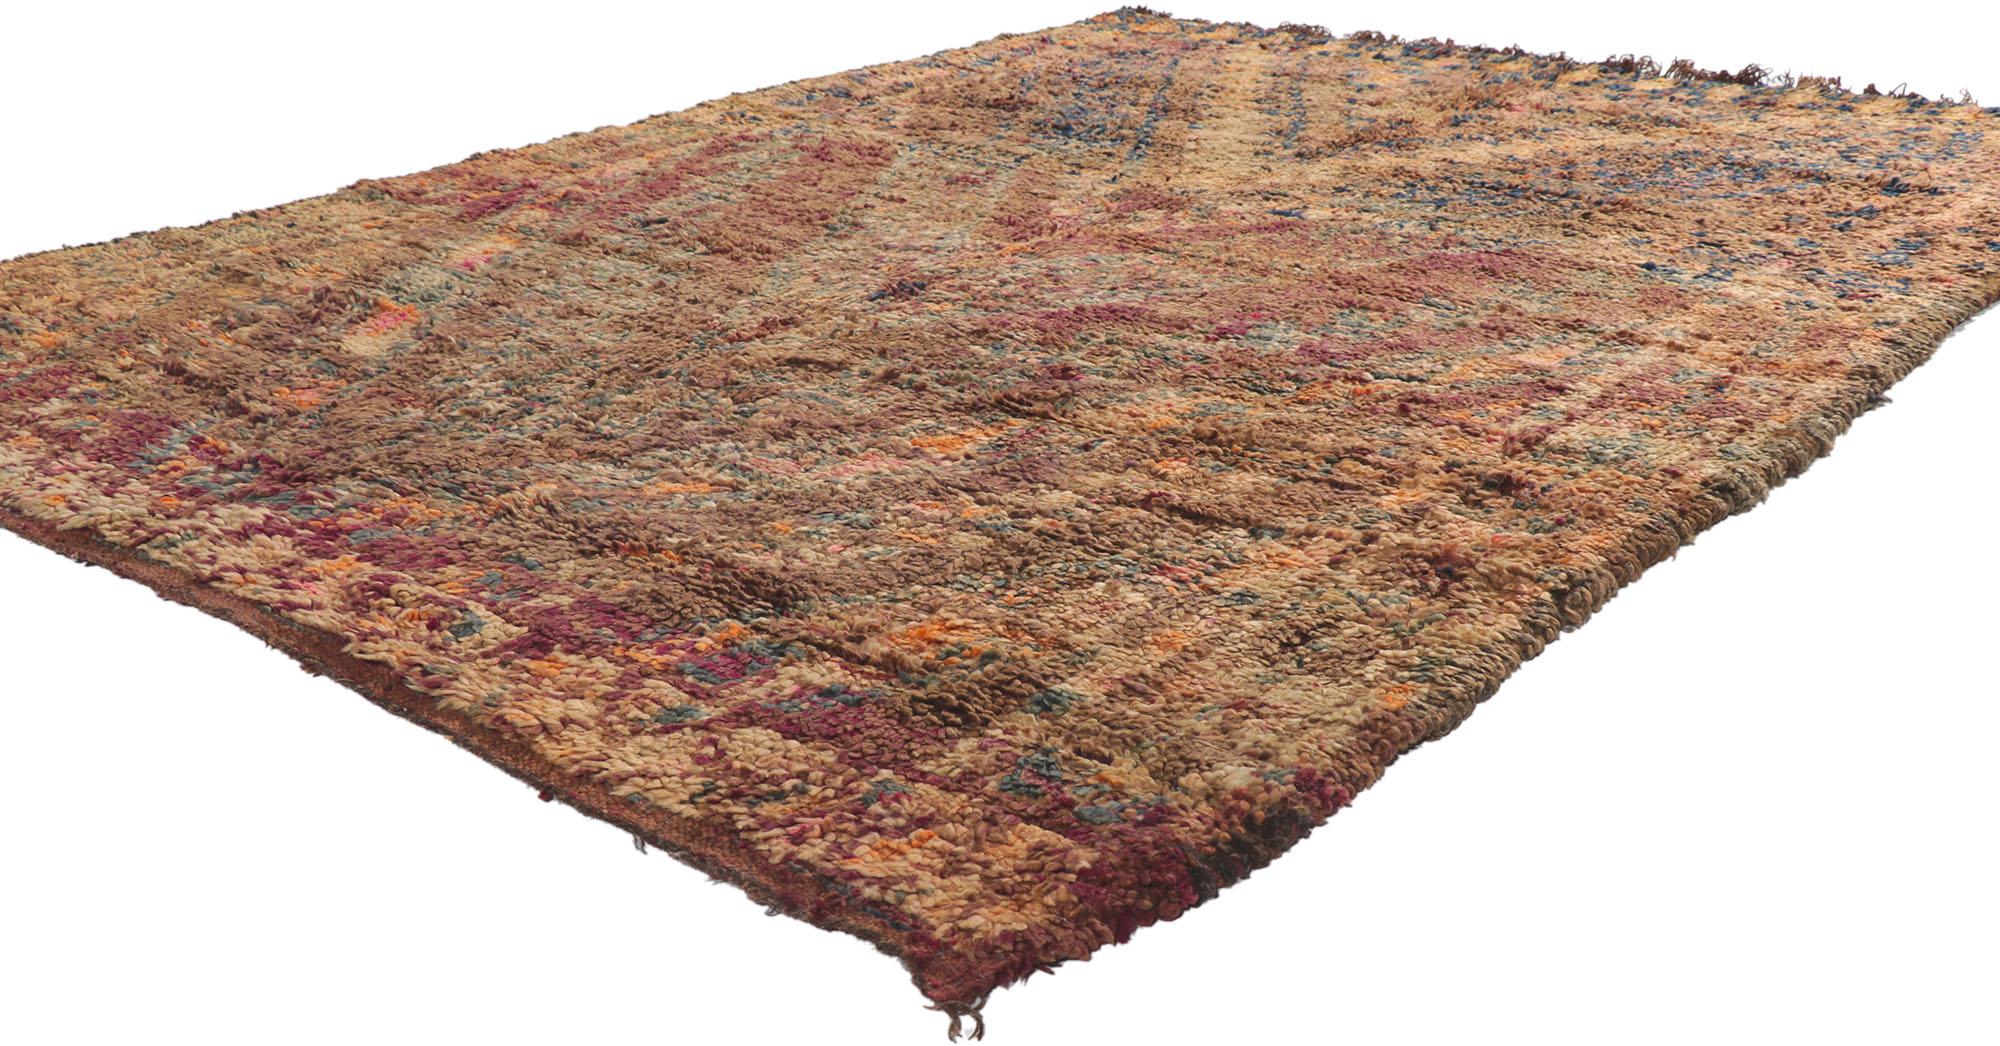 21255 Tapis marocain berbère vintage, 05'10 x 07'11.
Ce tapis marocain vintage en laine nouée à la main allie le luxe moderne à l'aspect ultra douillet. Les éléments tribaux distinctifs et les couleurs chaudes des tons de terre tissés dans cette